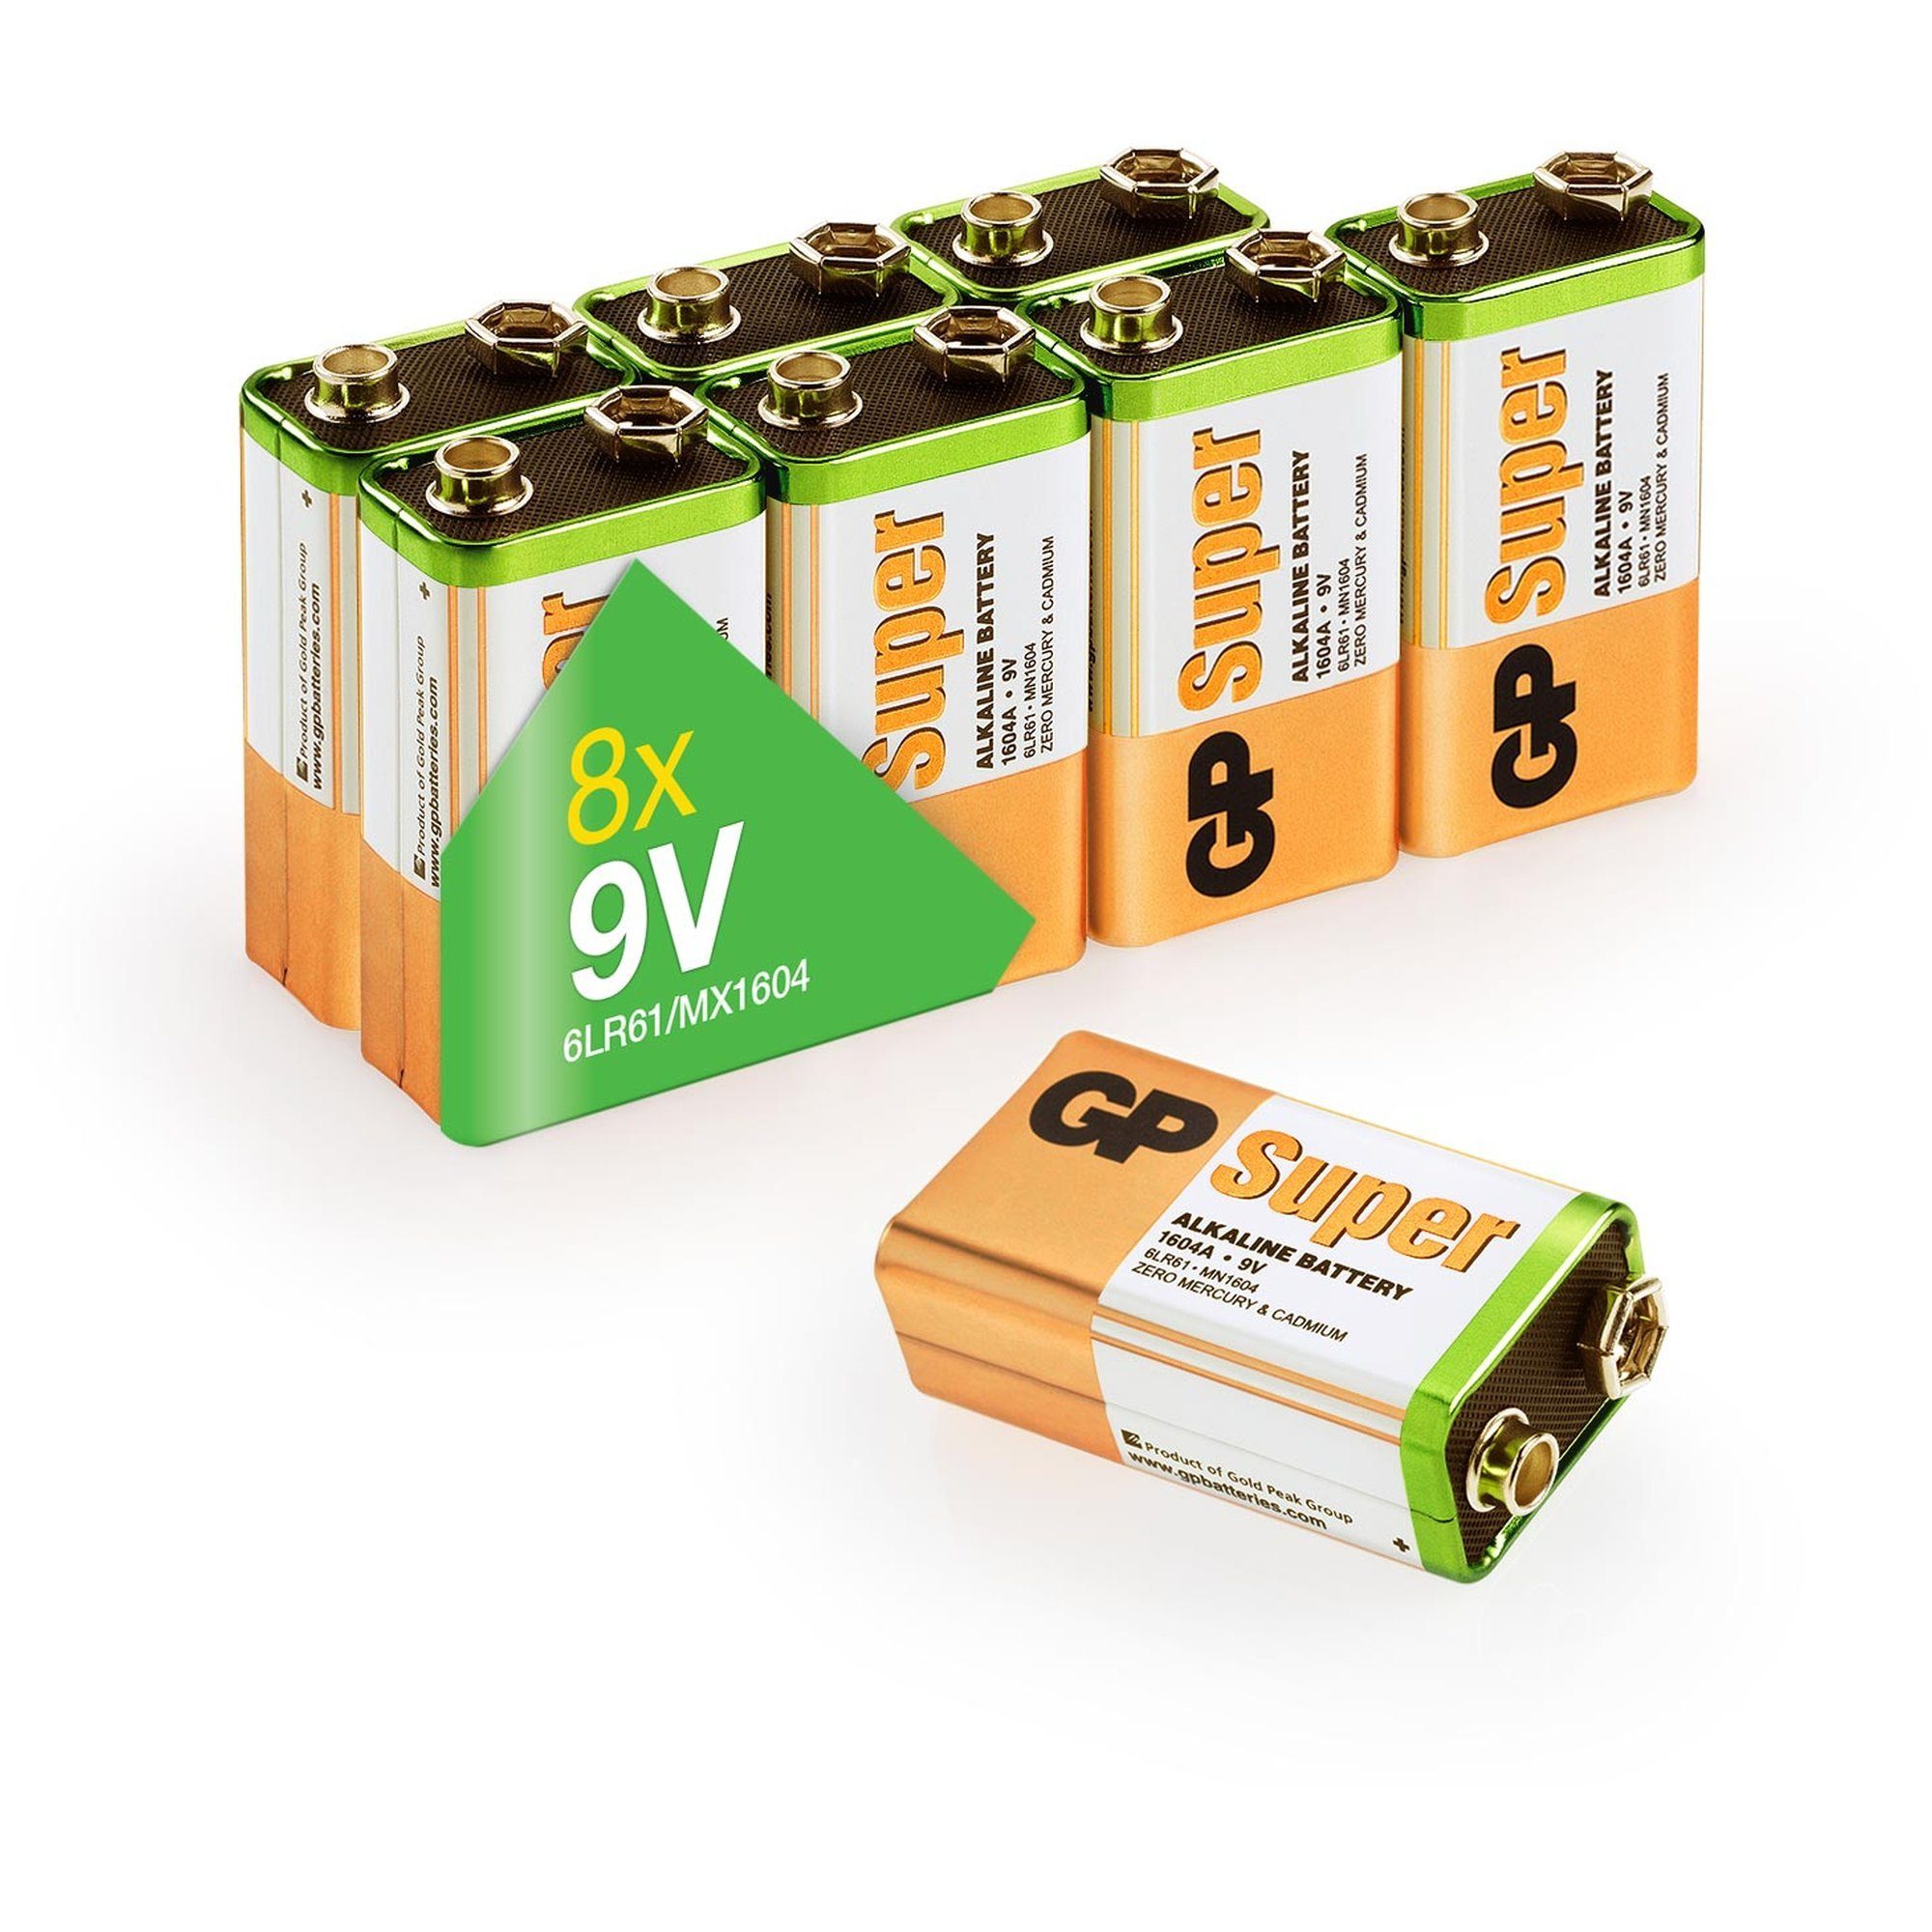 9V V) 9V GP (9,0 Batterie Alkaline Batterie, Super Stück 8 GP Batteries